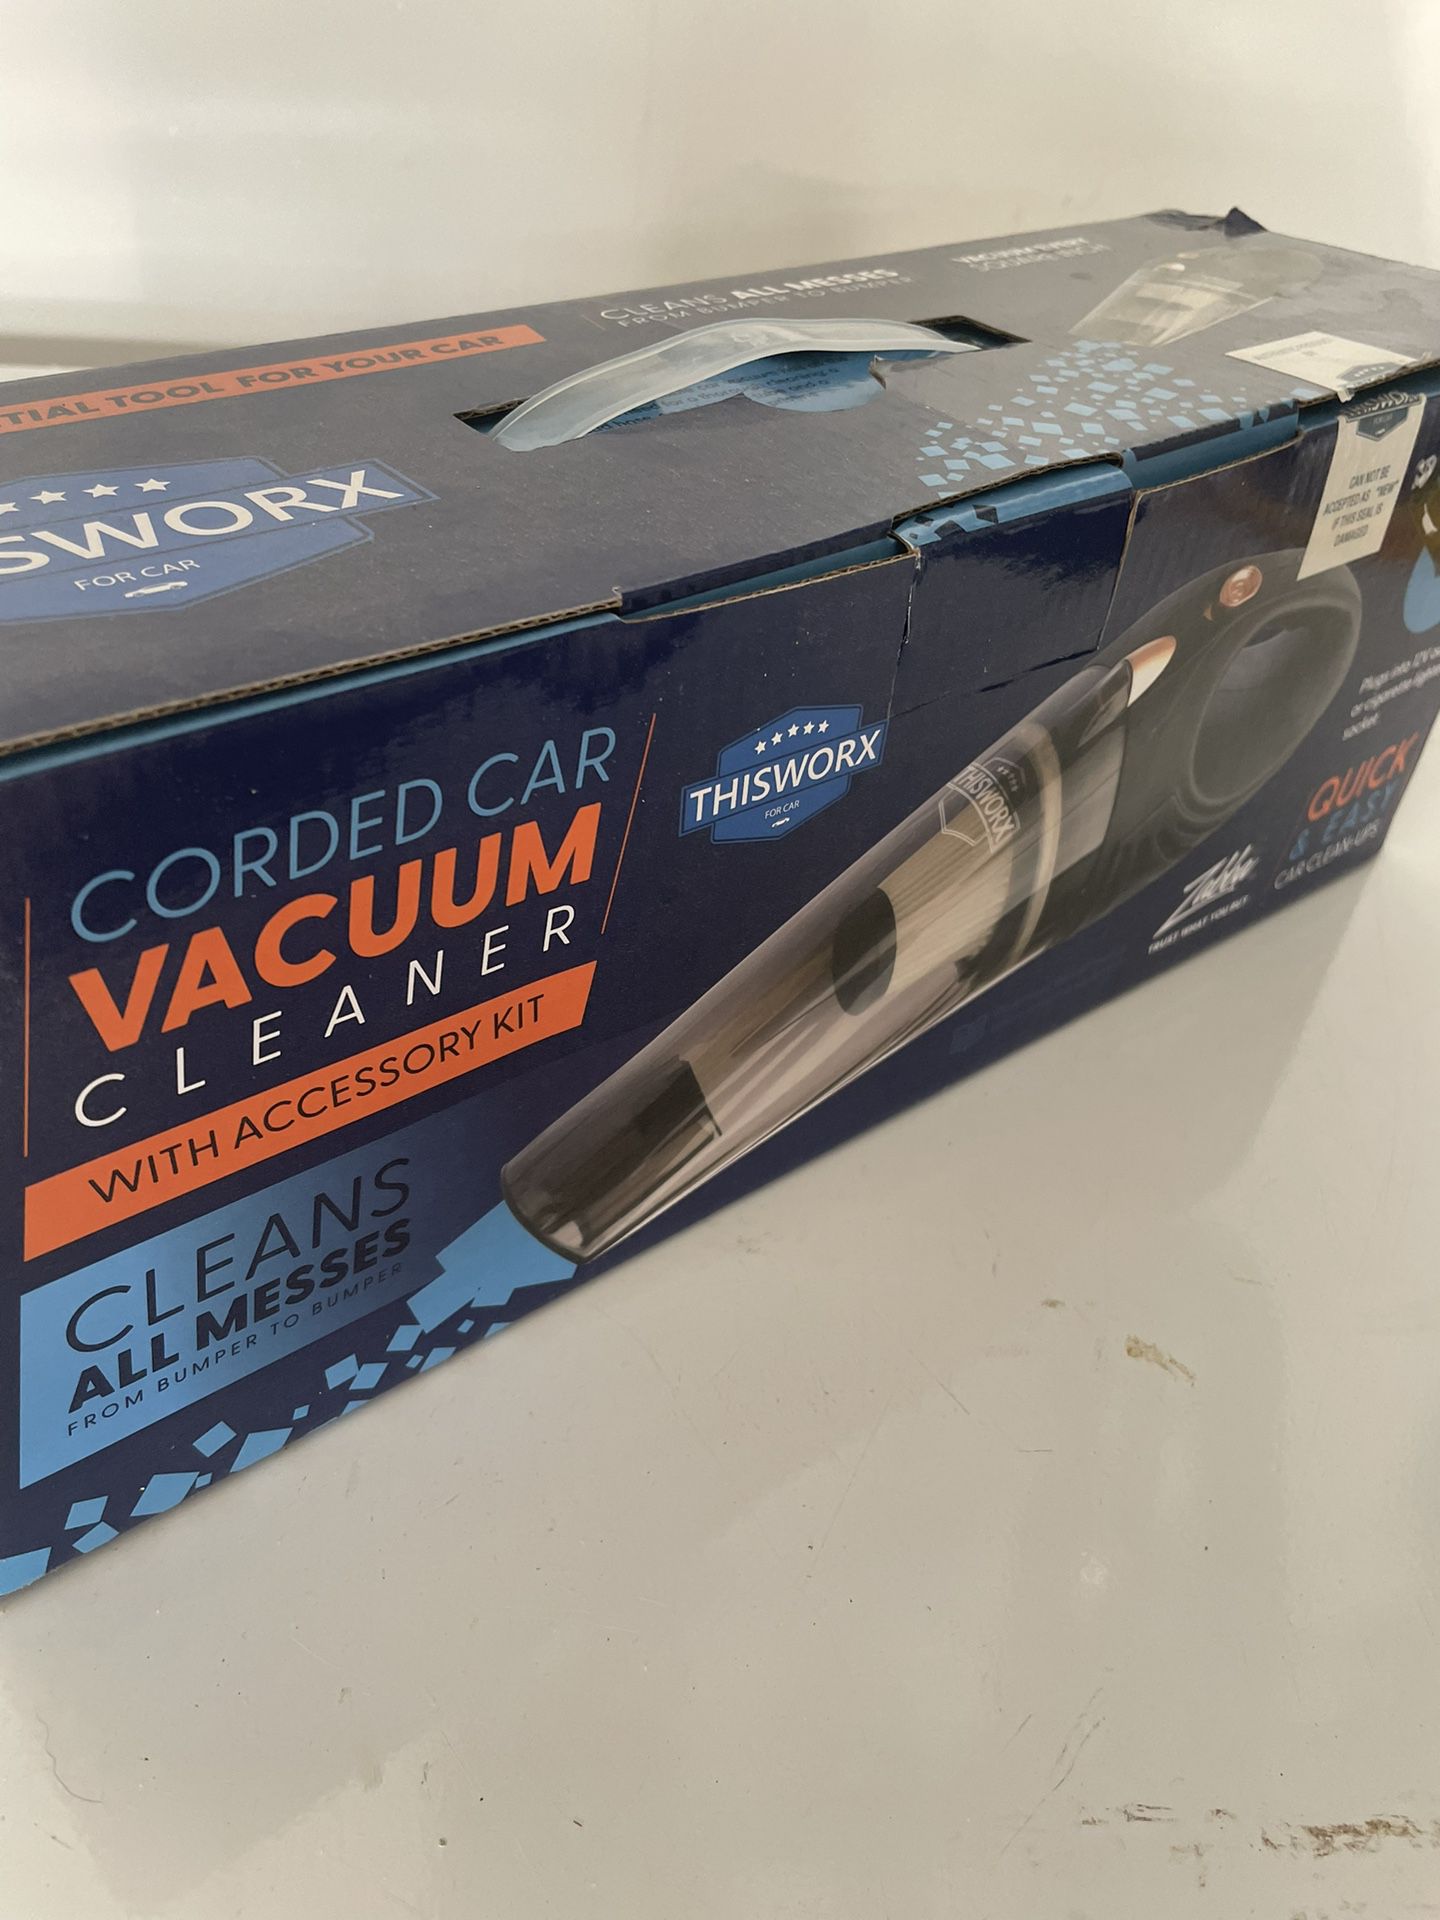 ThisWorx Car vacuum cleaner